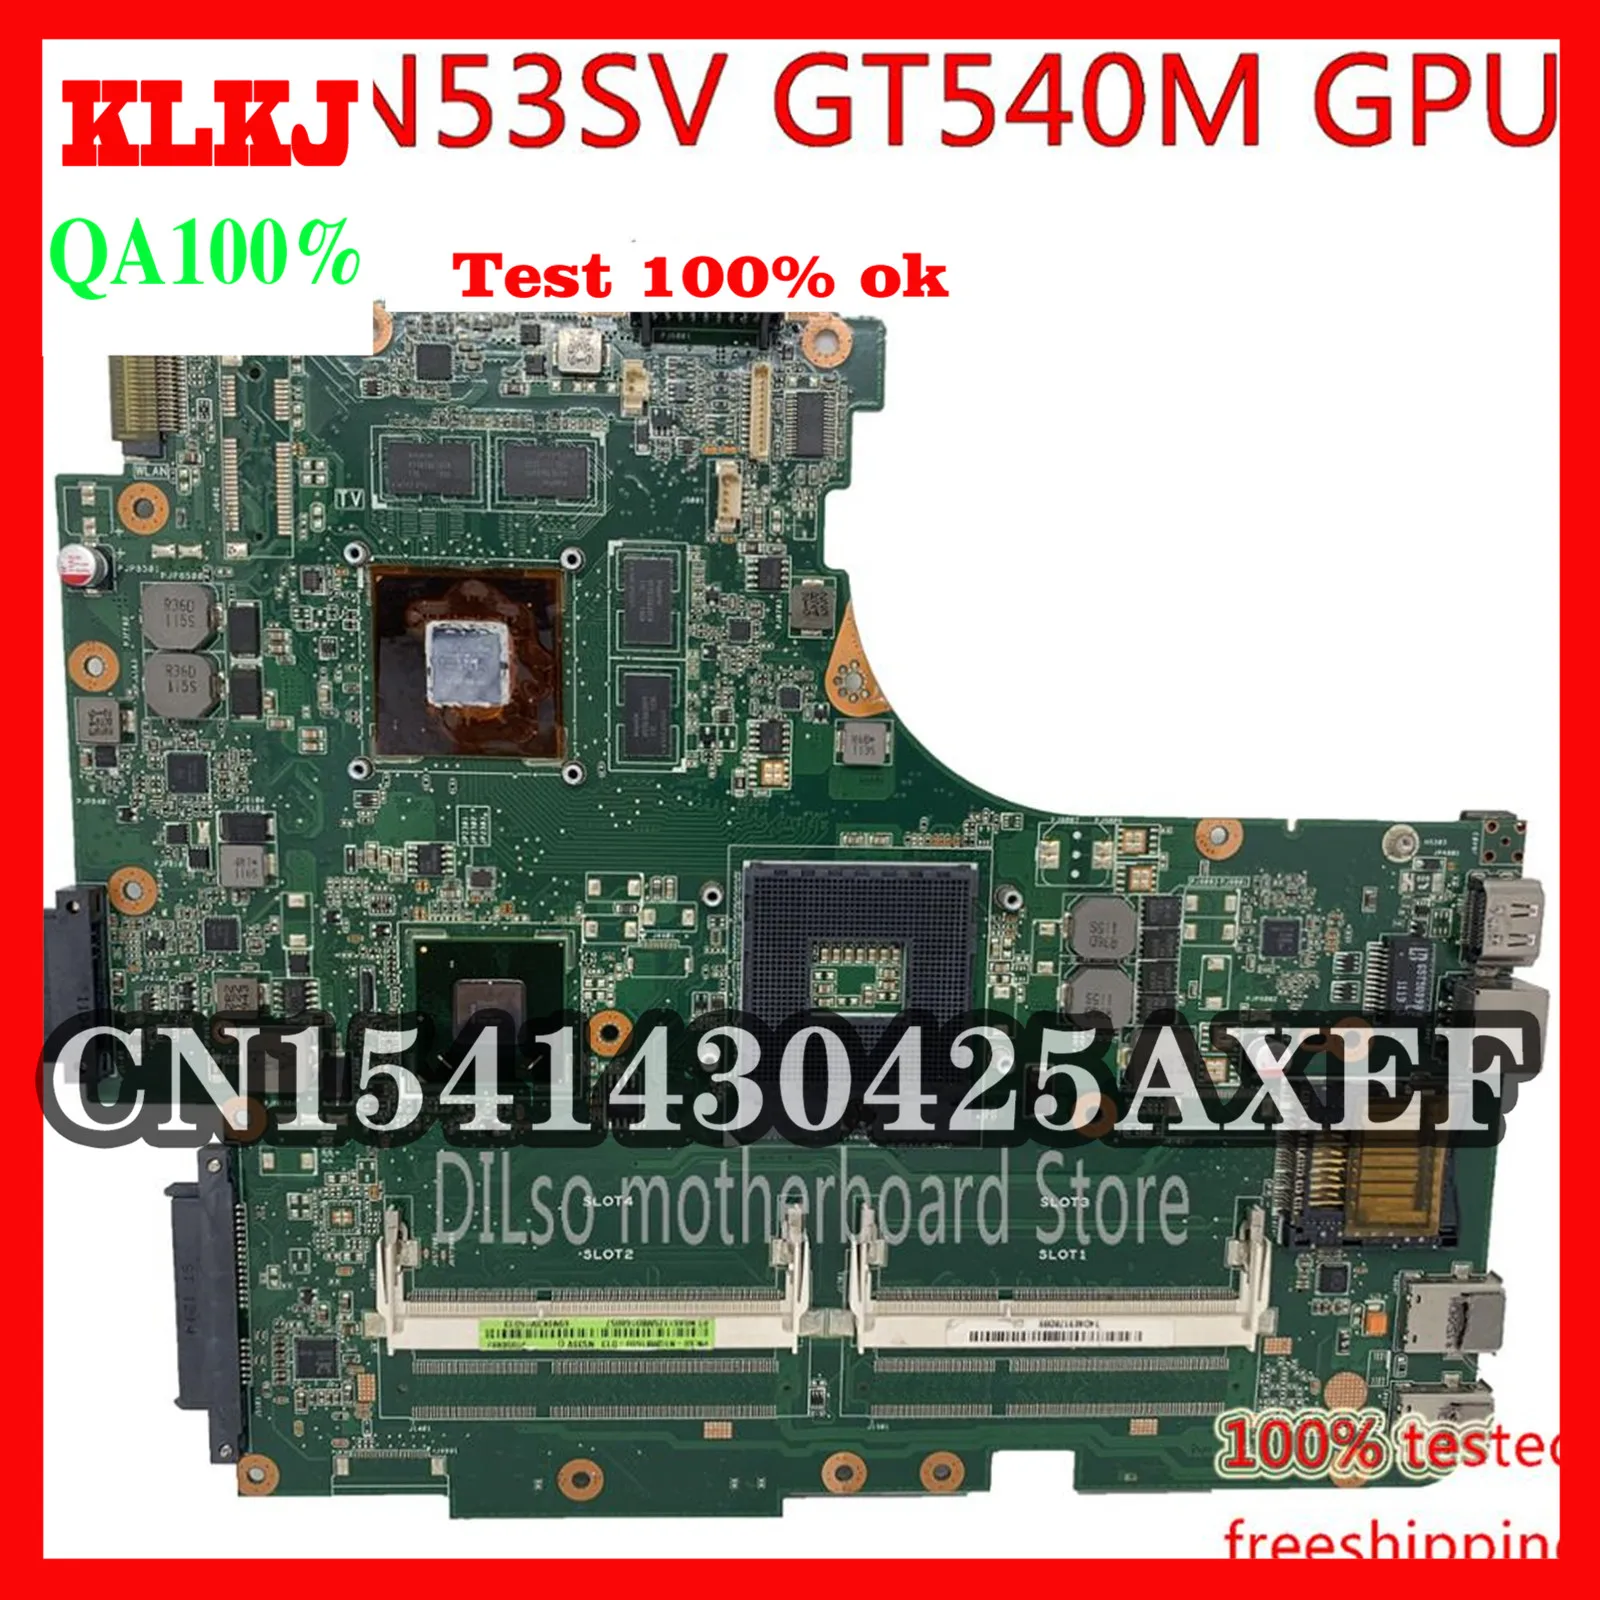 

Материнская плата KLKJ N53SV Материнская плата ASUS, N53S, N53SV, N53SN, N53SM, для ноутбука GT540M, 1G, Видео память, тестирование работы, 100% оригинал